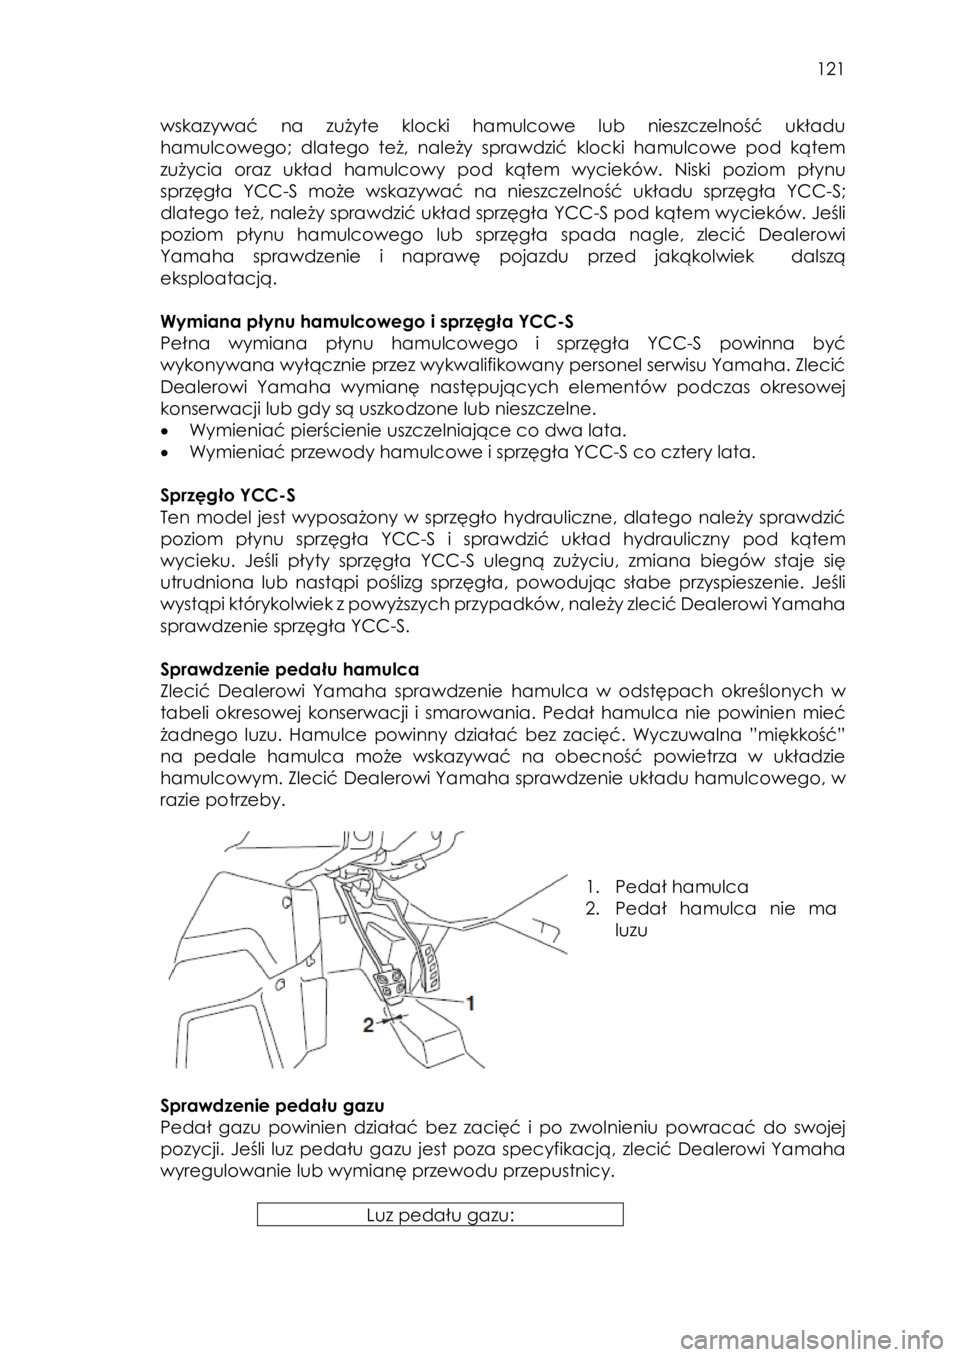 YAMAHA YXZ1000R SS 2017  Instrukcja obsługi (in Polish)  121 
wskazywać  na  zużyte  klocki  hamulcowe  lub  nieszczelność  układu 
hamulcowego; dlatego  też,  należy  sprawdzić klocki  hamulcowe  pod  kątem 
zużycia  oraz  układ  hamulcowy pod 